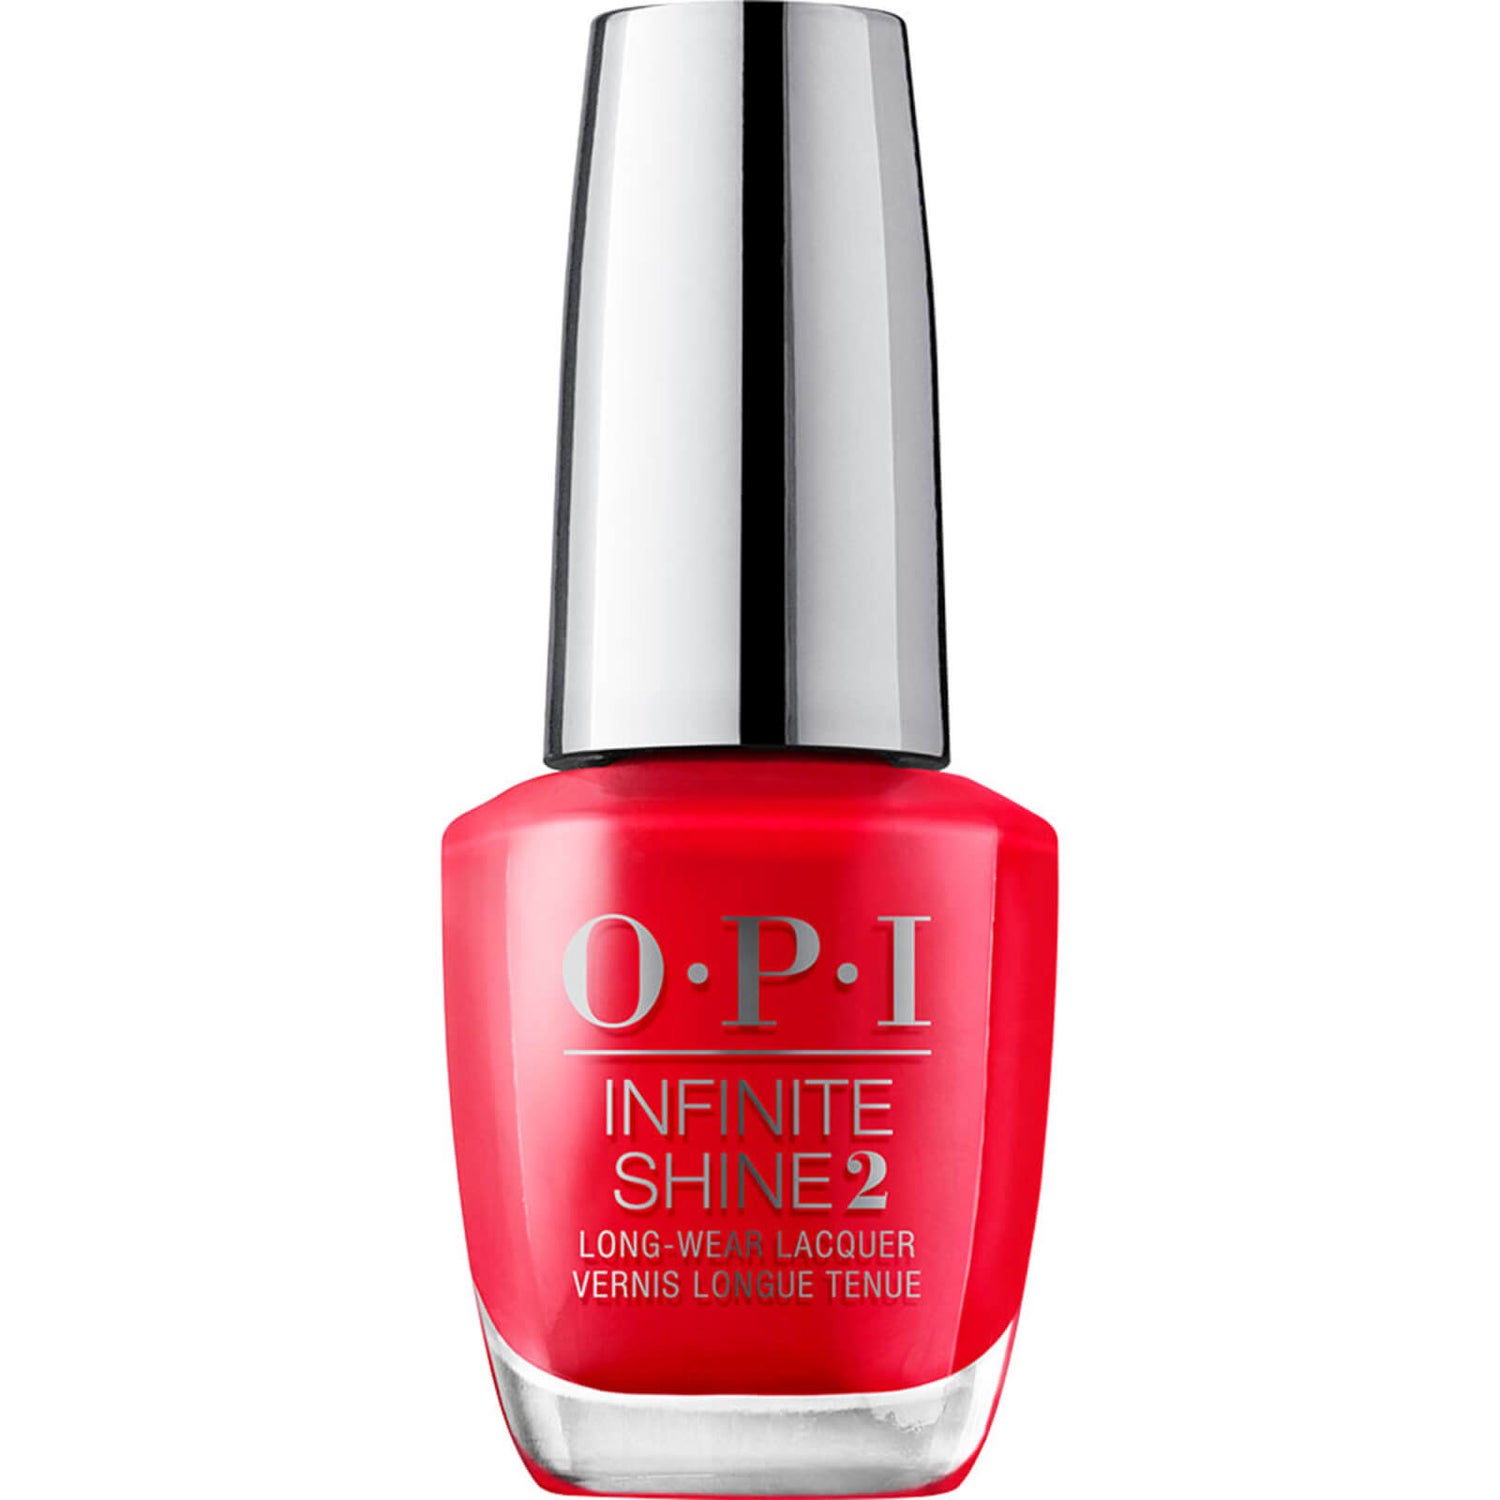 Opi Cajun shrimp | Opi nail colors, Shellac nail colors, Nails